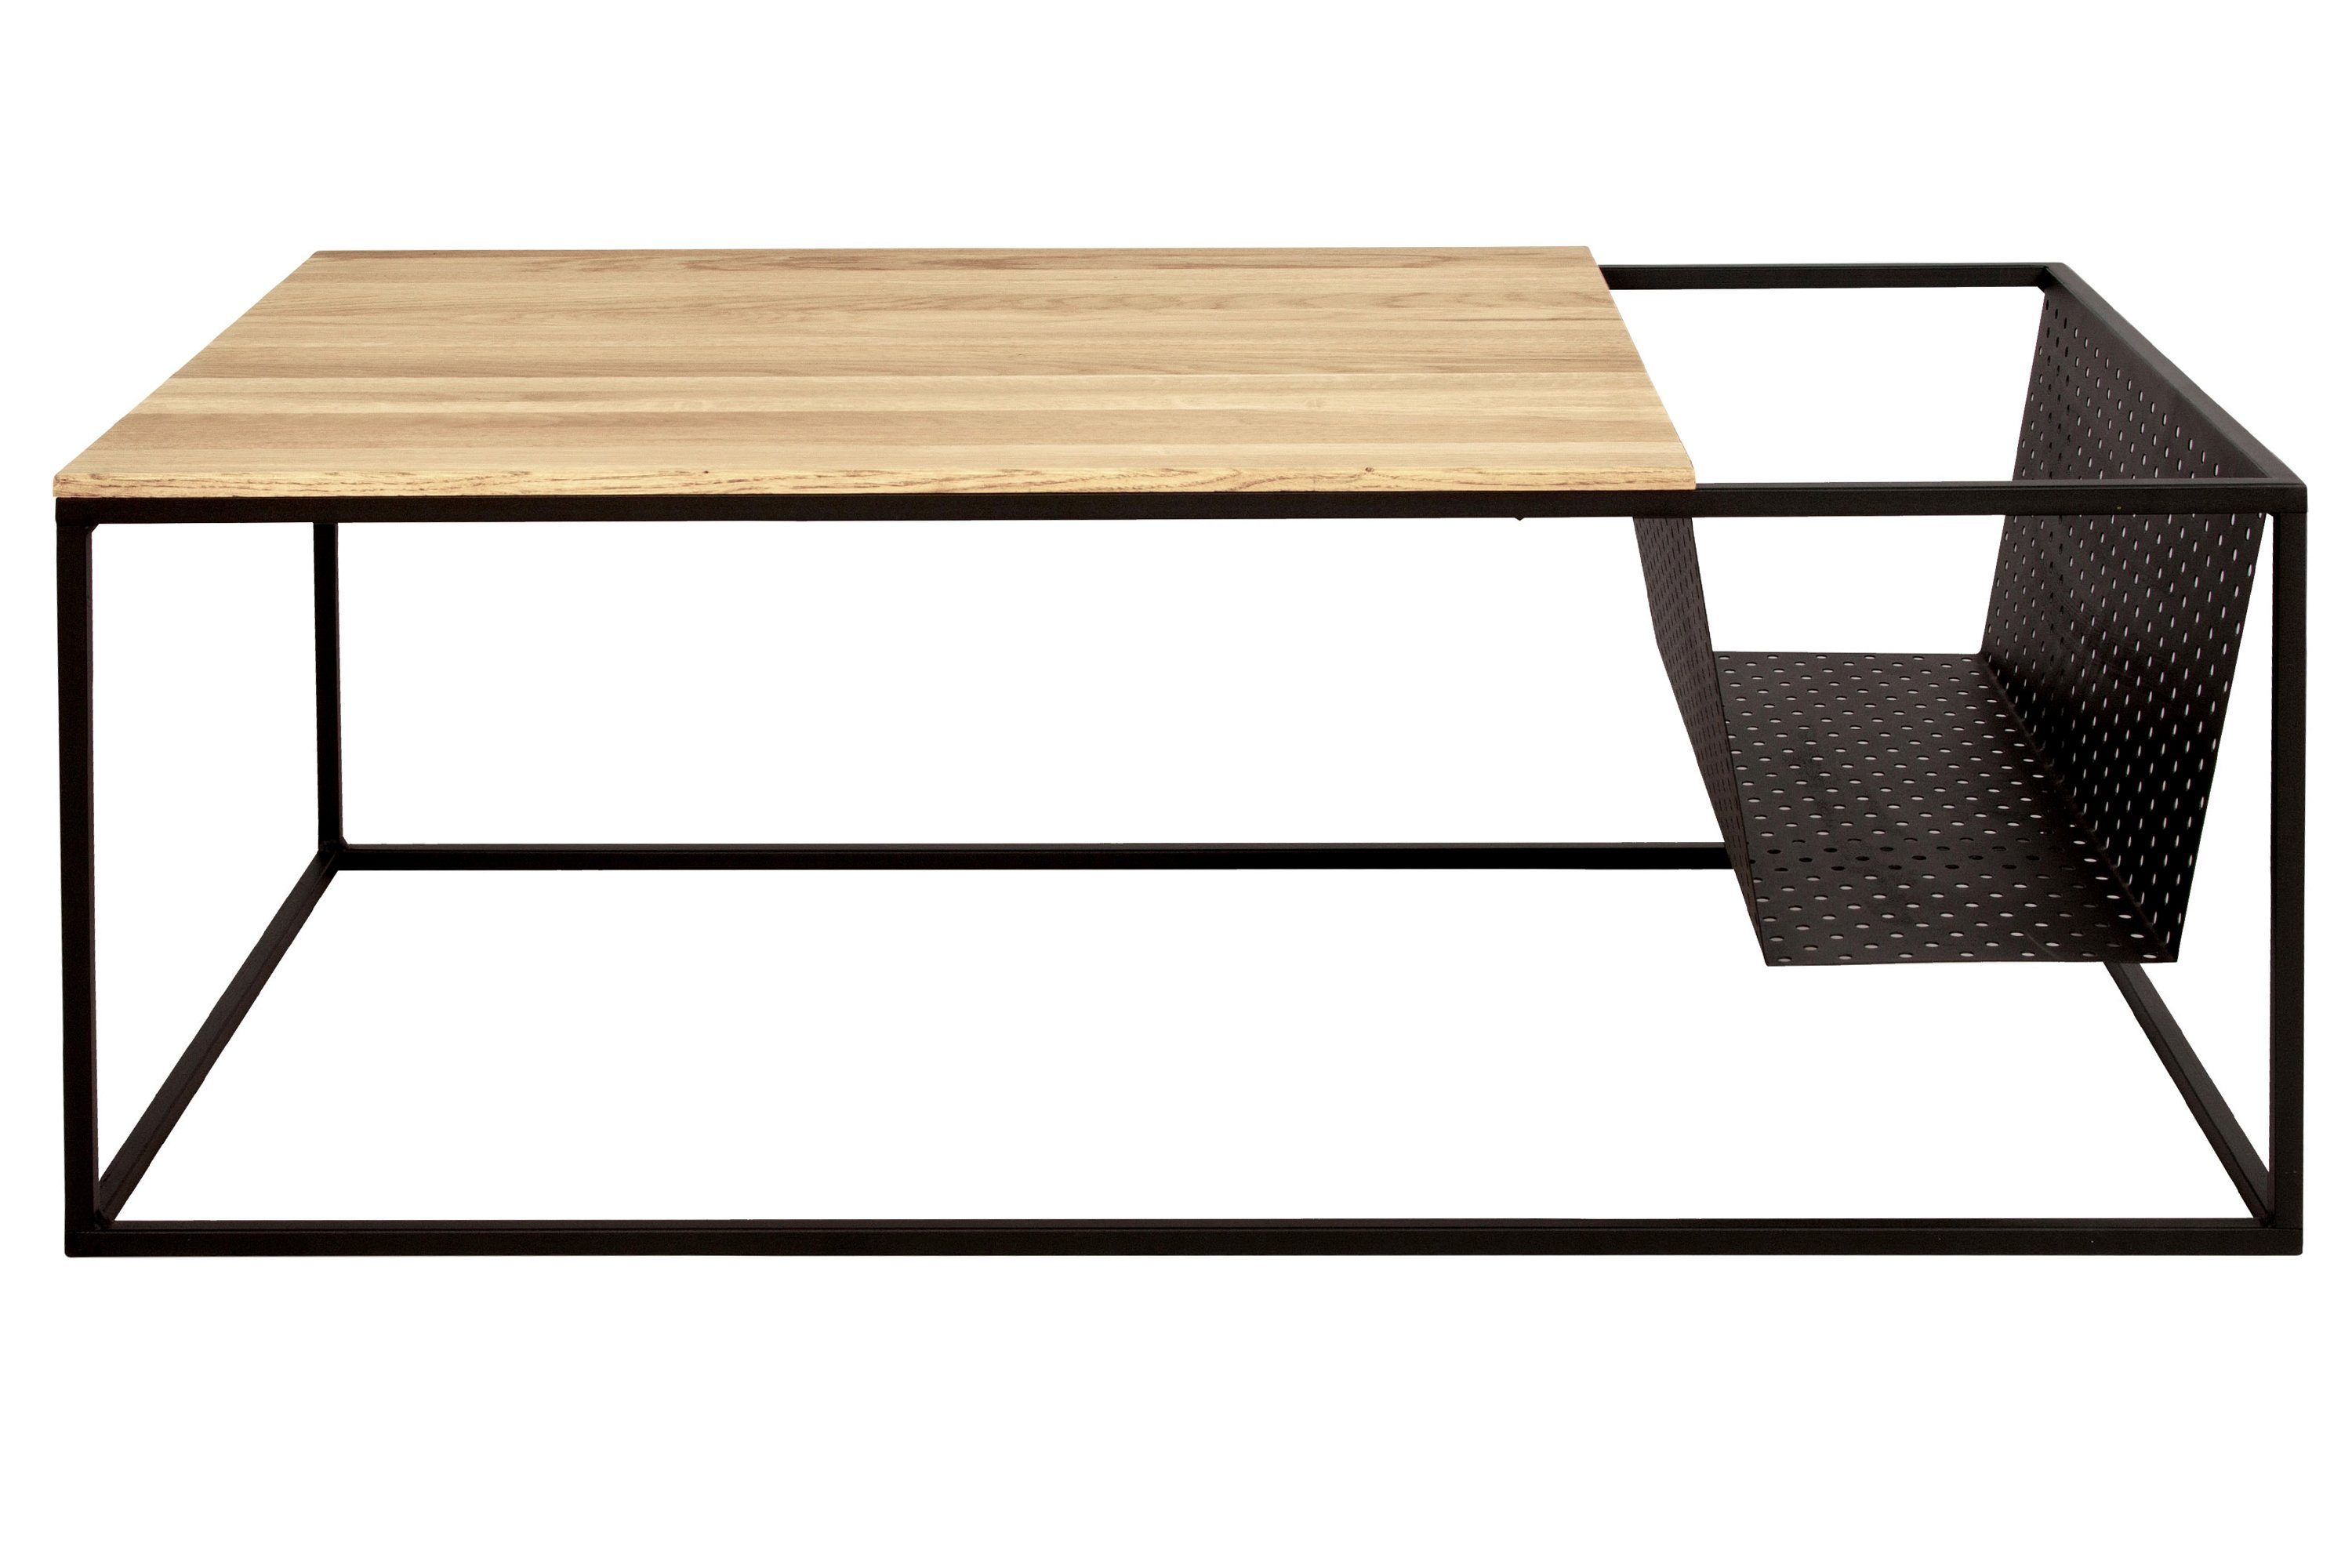 18mm, Eiche 110cm Junado® Tischplatte Massivholz, Dari, der Stärke Couchtisch L